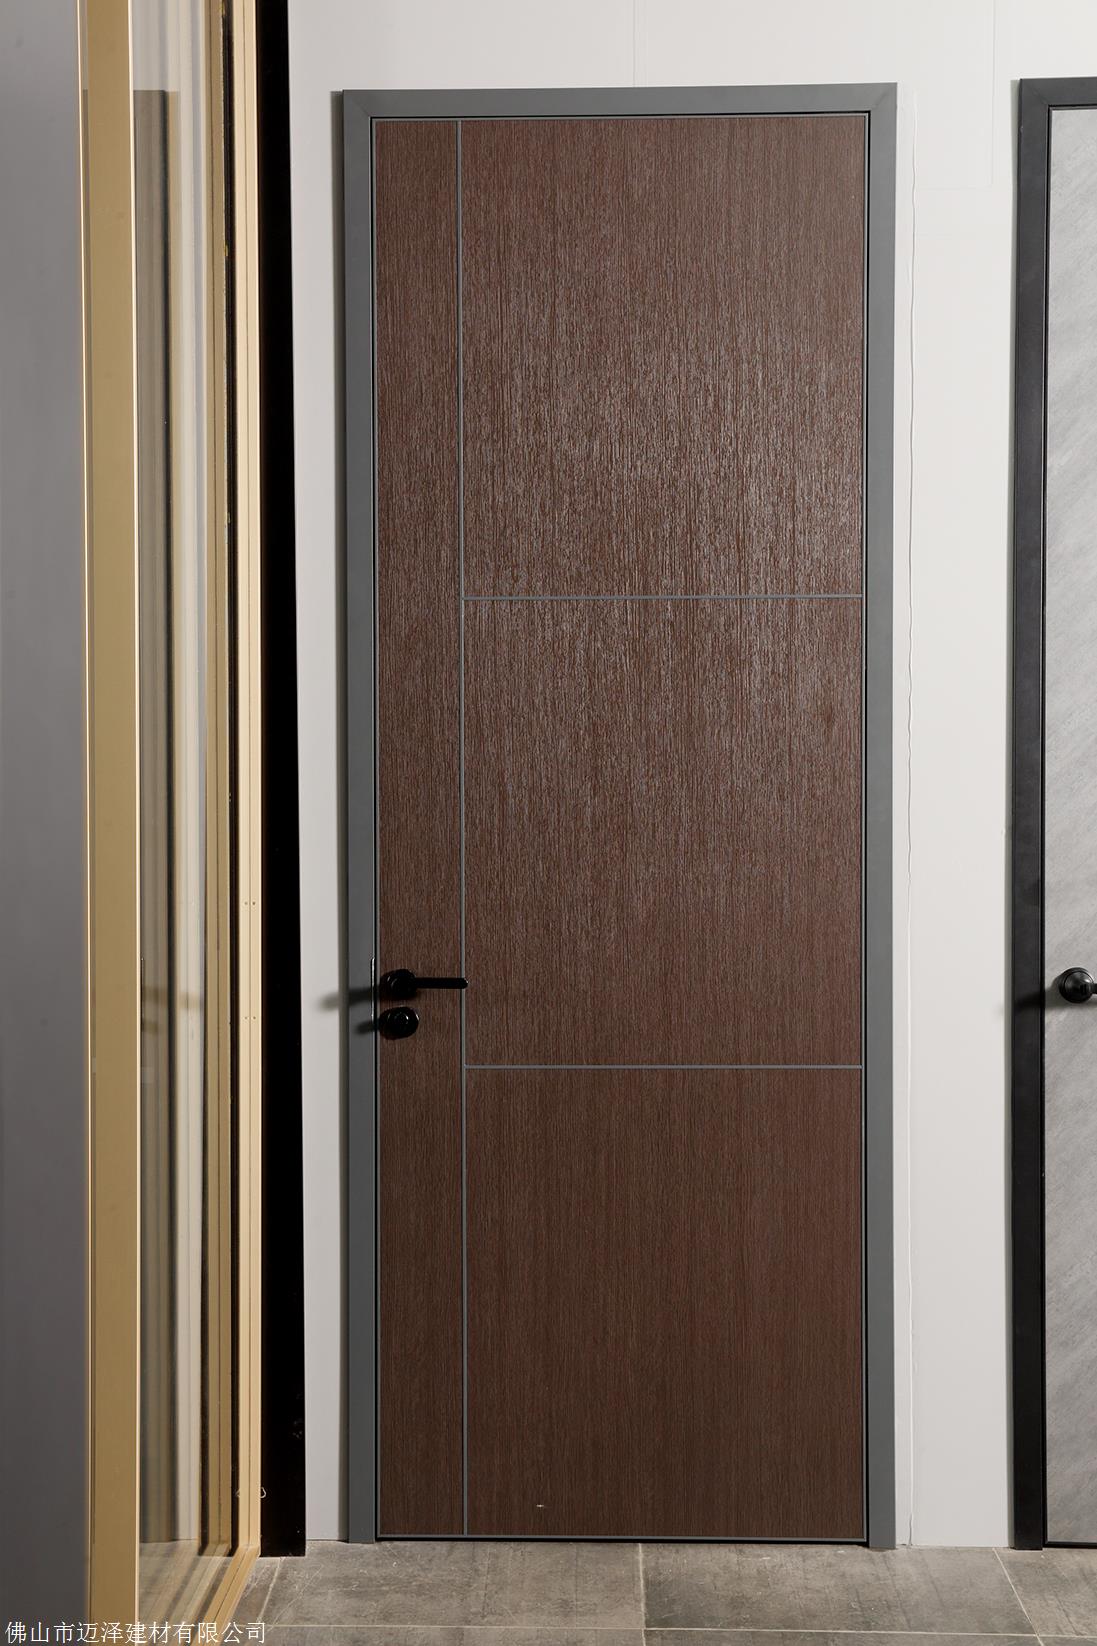 上海轻奢极简室内门铝蜂窝生态门窄边生态铝门卧室门定制